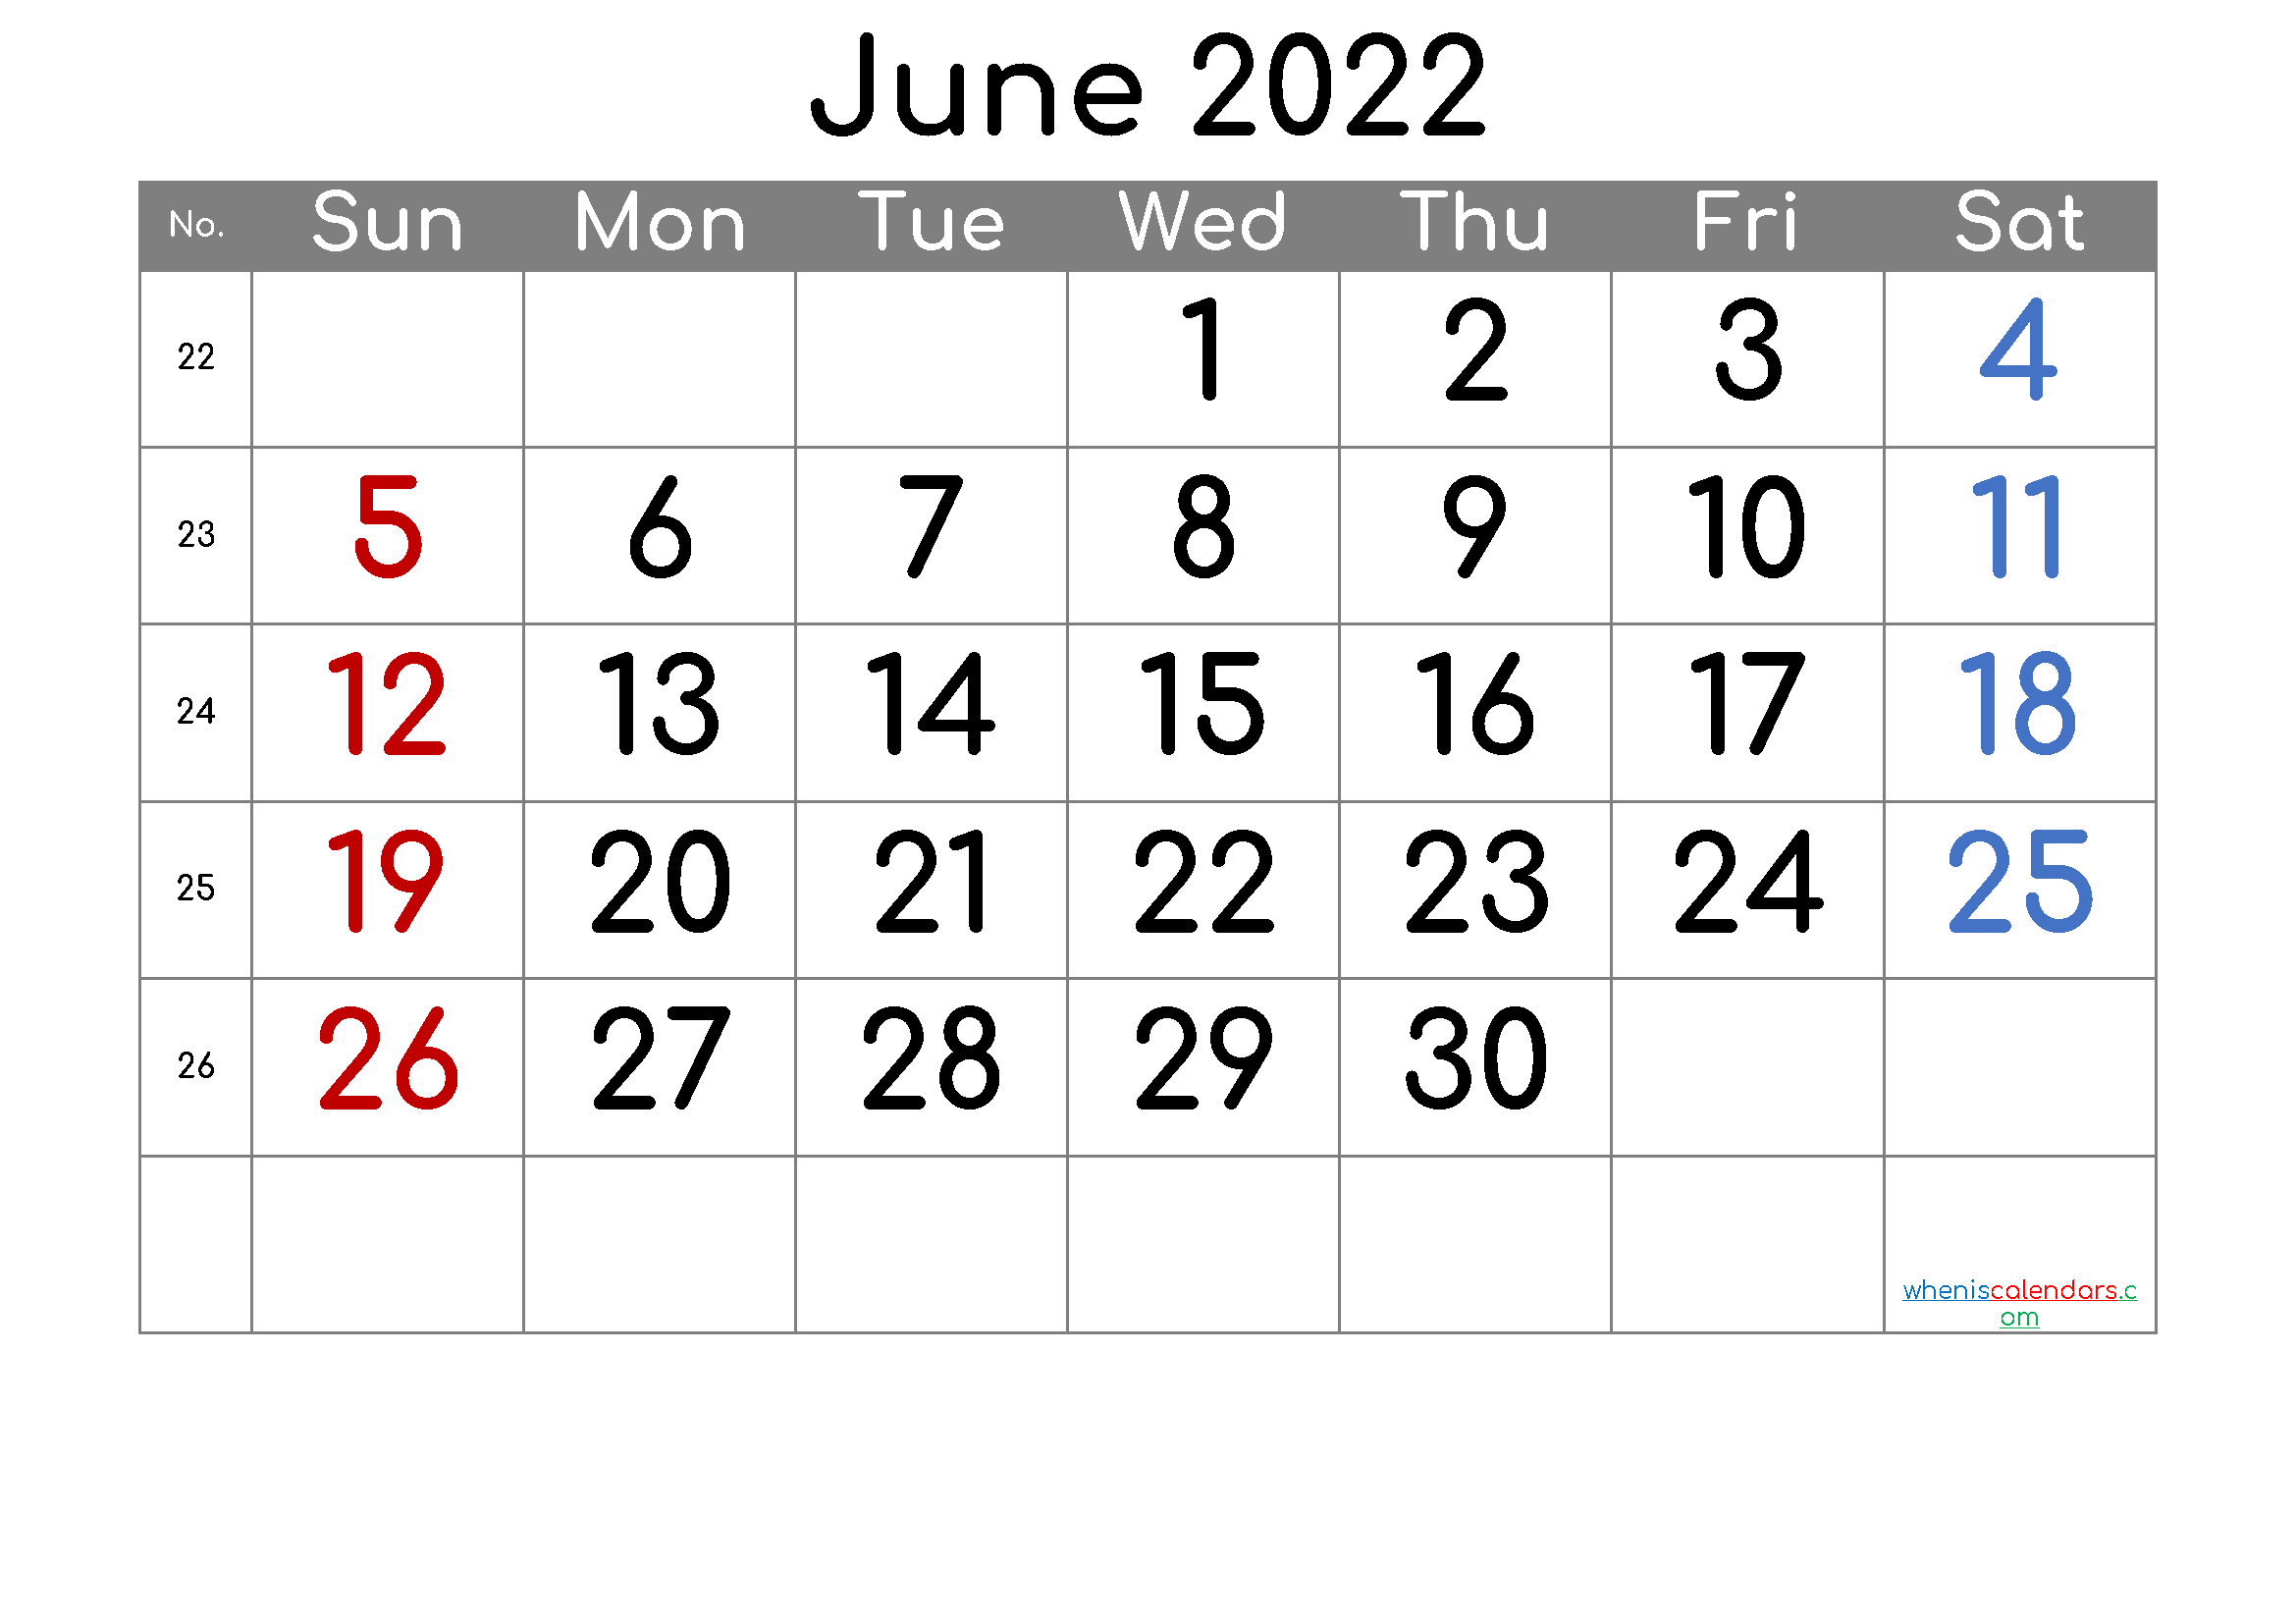 June 2022 Printable Calendar - 6 Templates | June Calendar  2022 Calendar Printable June